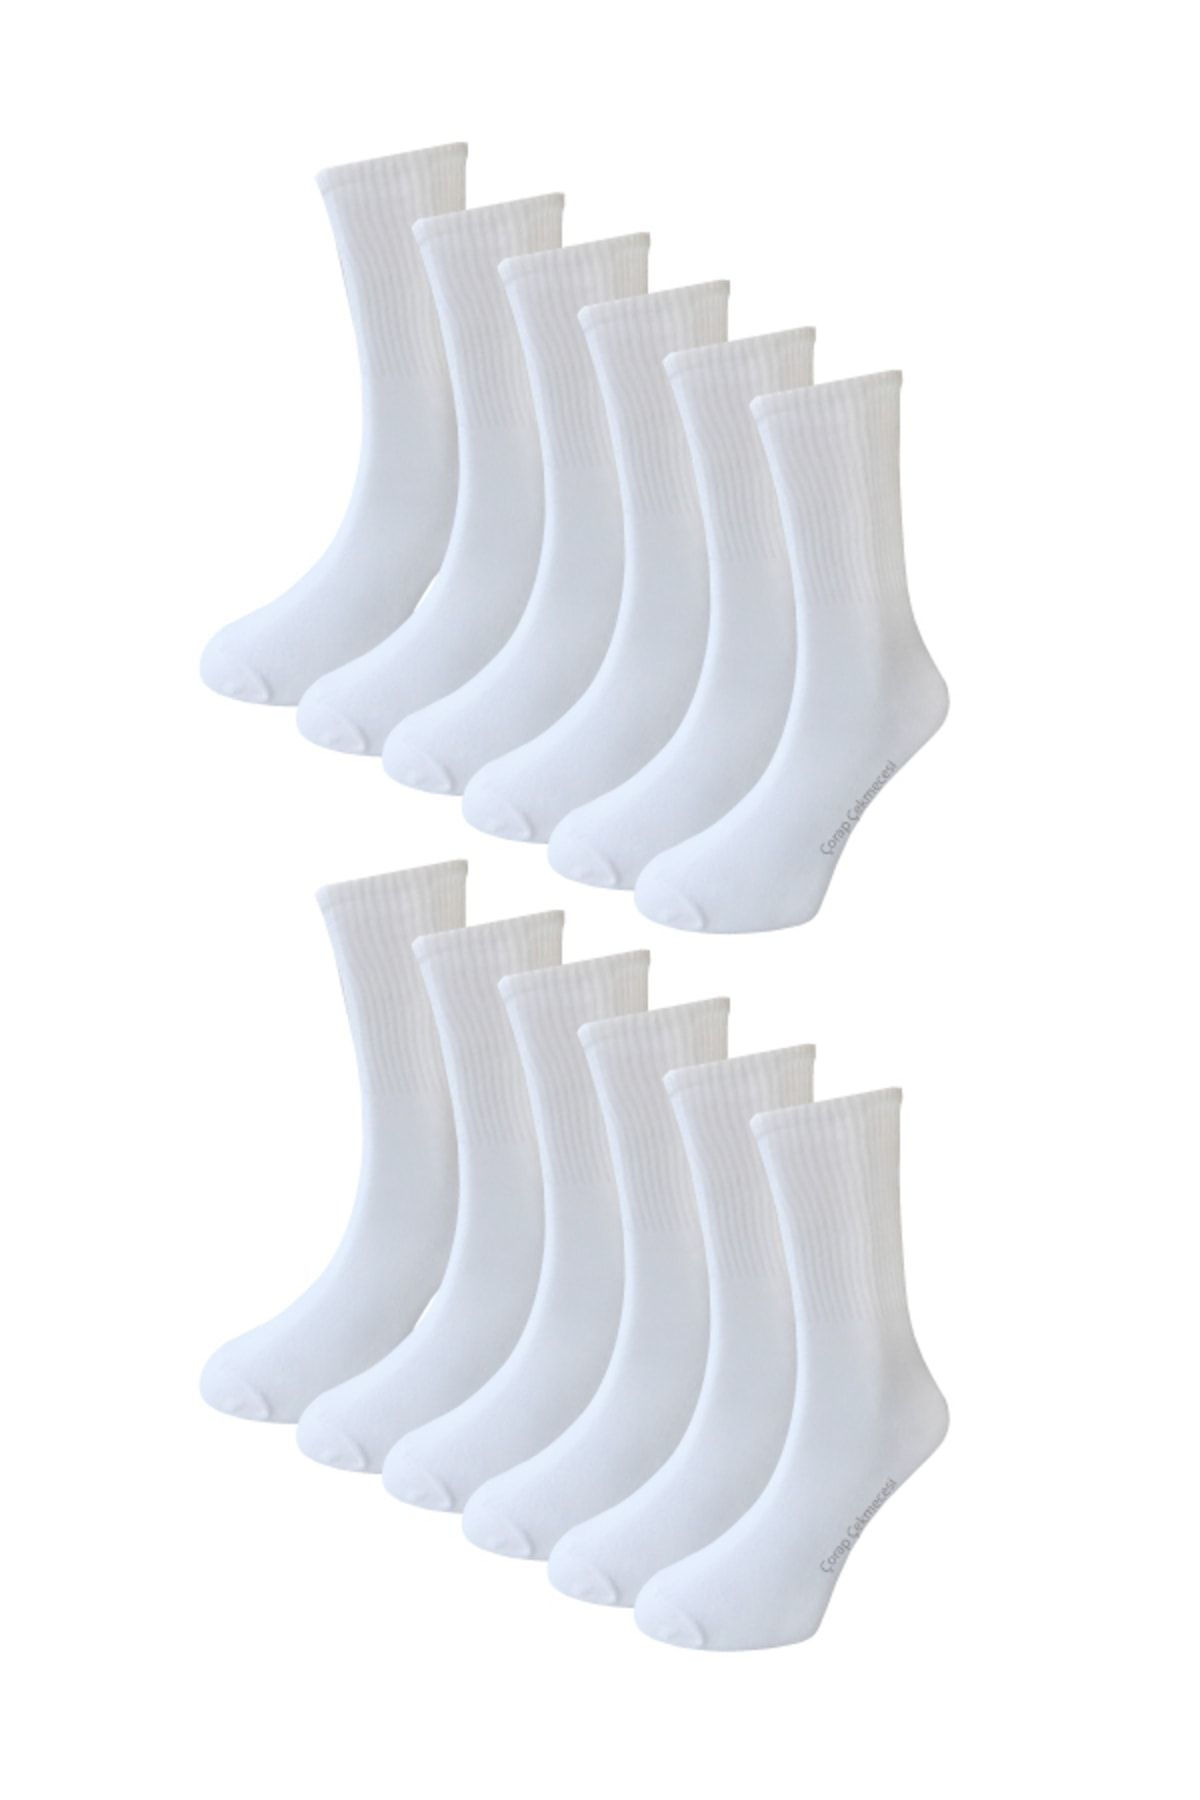 Çorap Çekmecesi Pamuklu Düz Beyaz Tenis Çorap 12'li